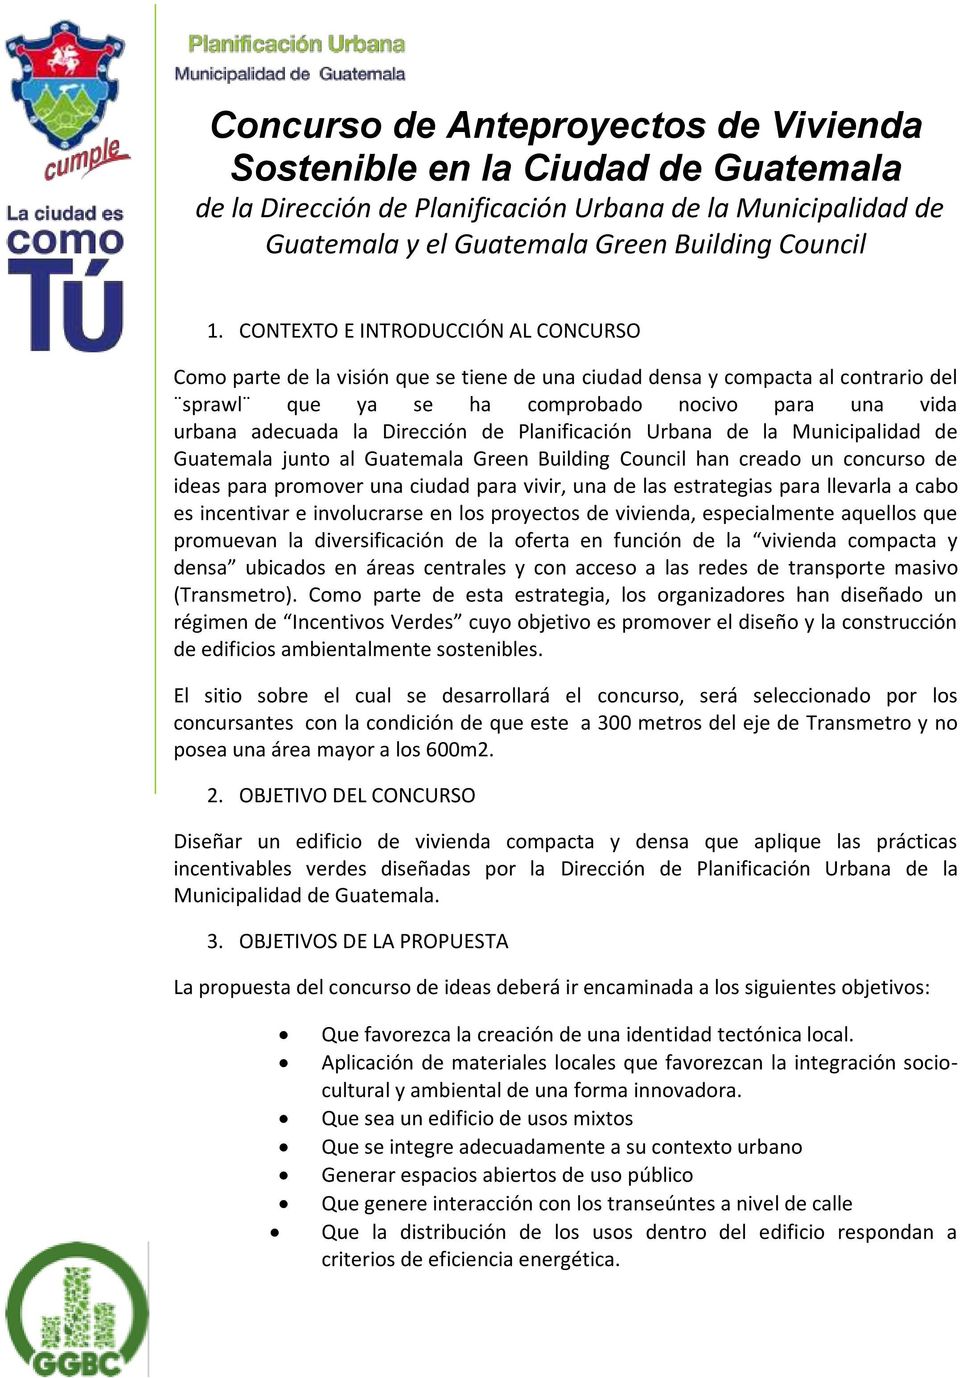 Dirección de Planificación Urbana de la Municipalidad de Guatemala junto al Guatemala Green Building Council han creado un concurso de ideas para promover una ciudad para vivir, una de las